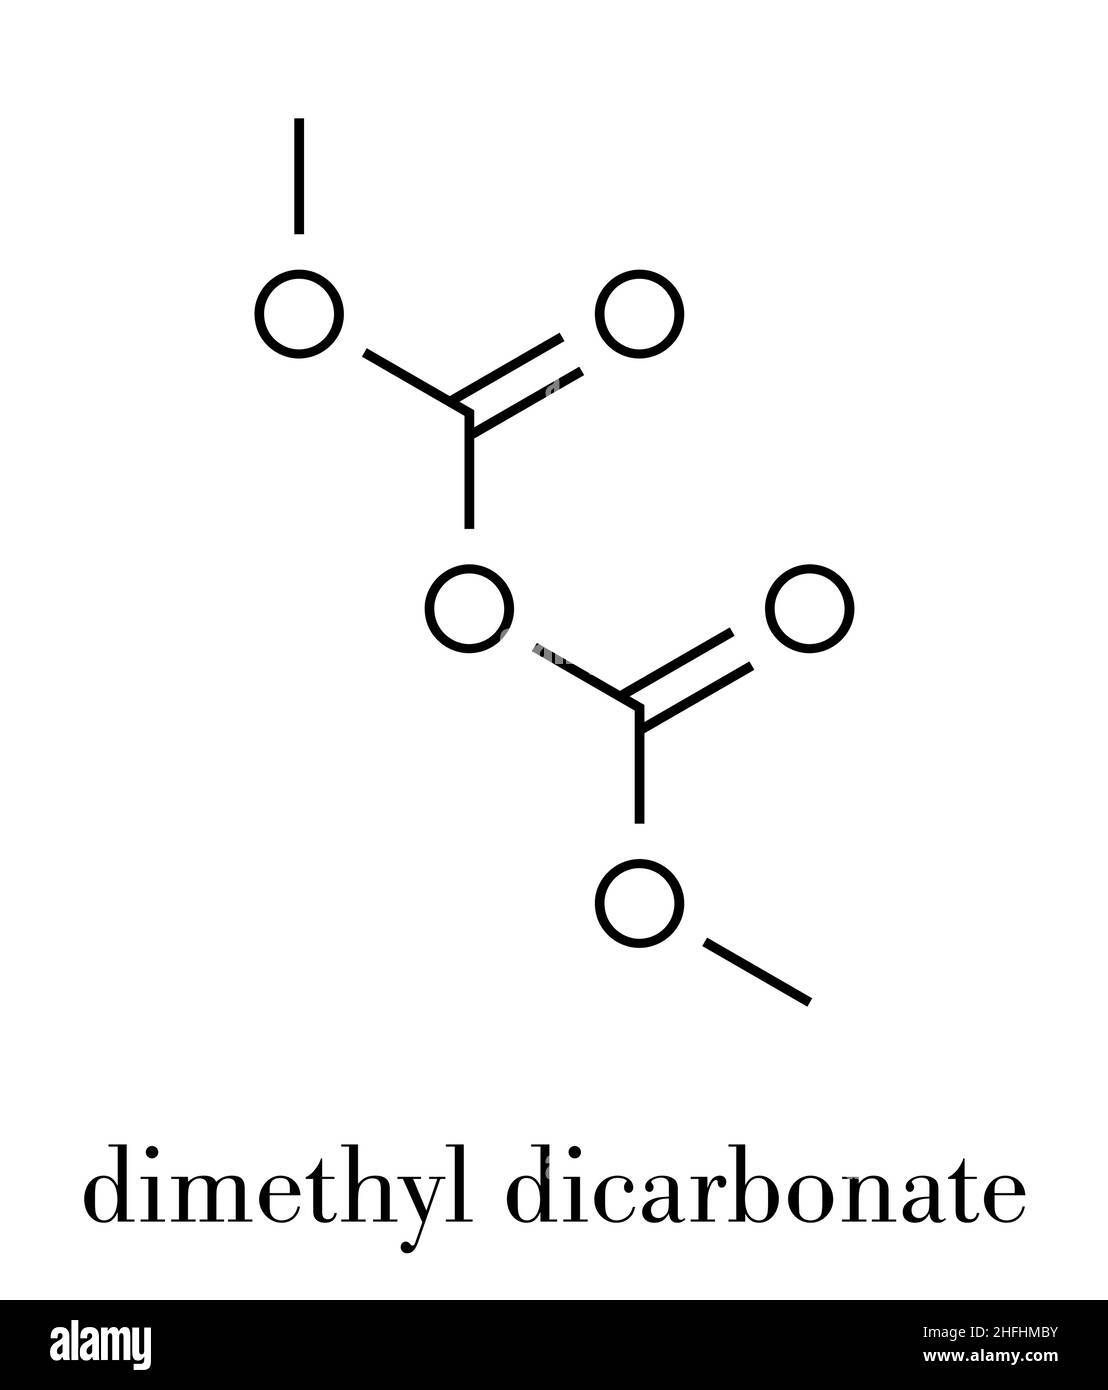 Dimethyl dicarbonate (DMDC) trinken Konservierungsmittel Molekül. Zusatz hinzugefügt, Wein, Sport, Getränke, Eistee, etc. der Skelettmuskulatur Formel. Stock Vektor